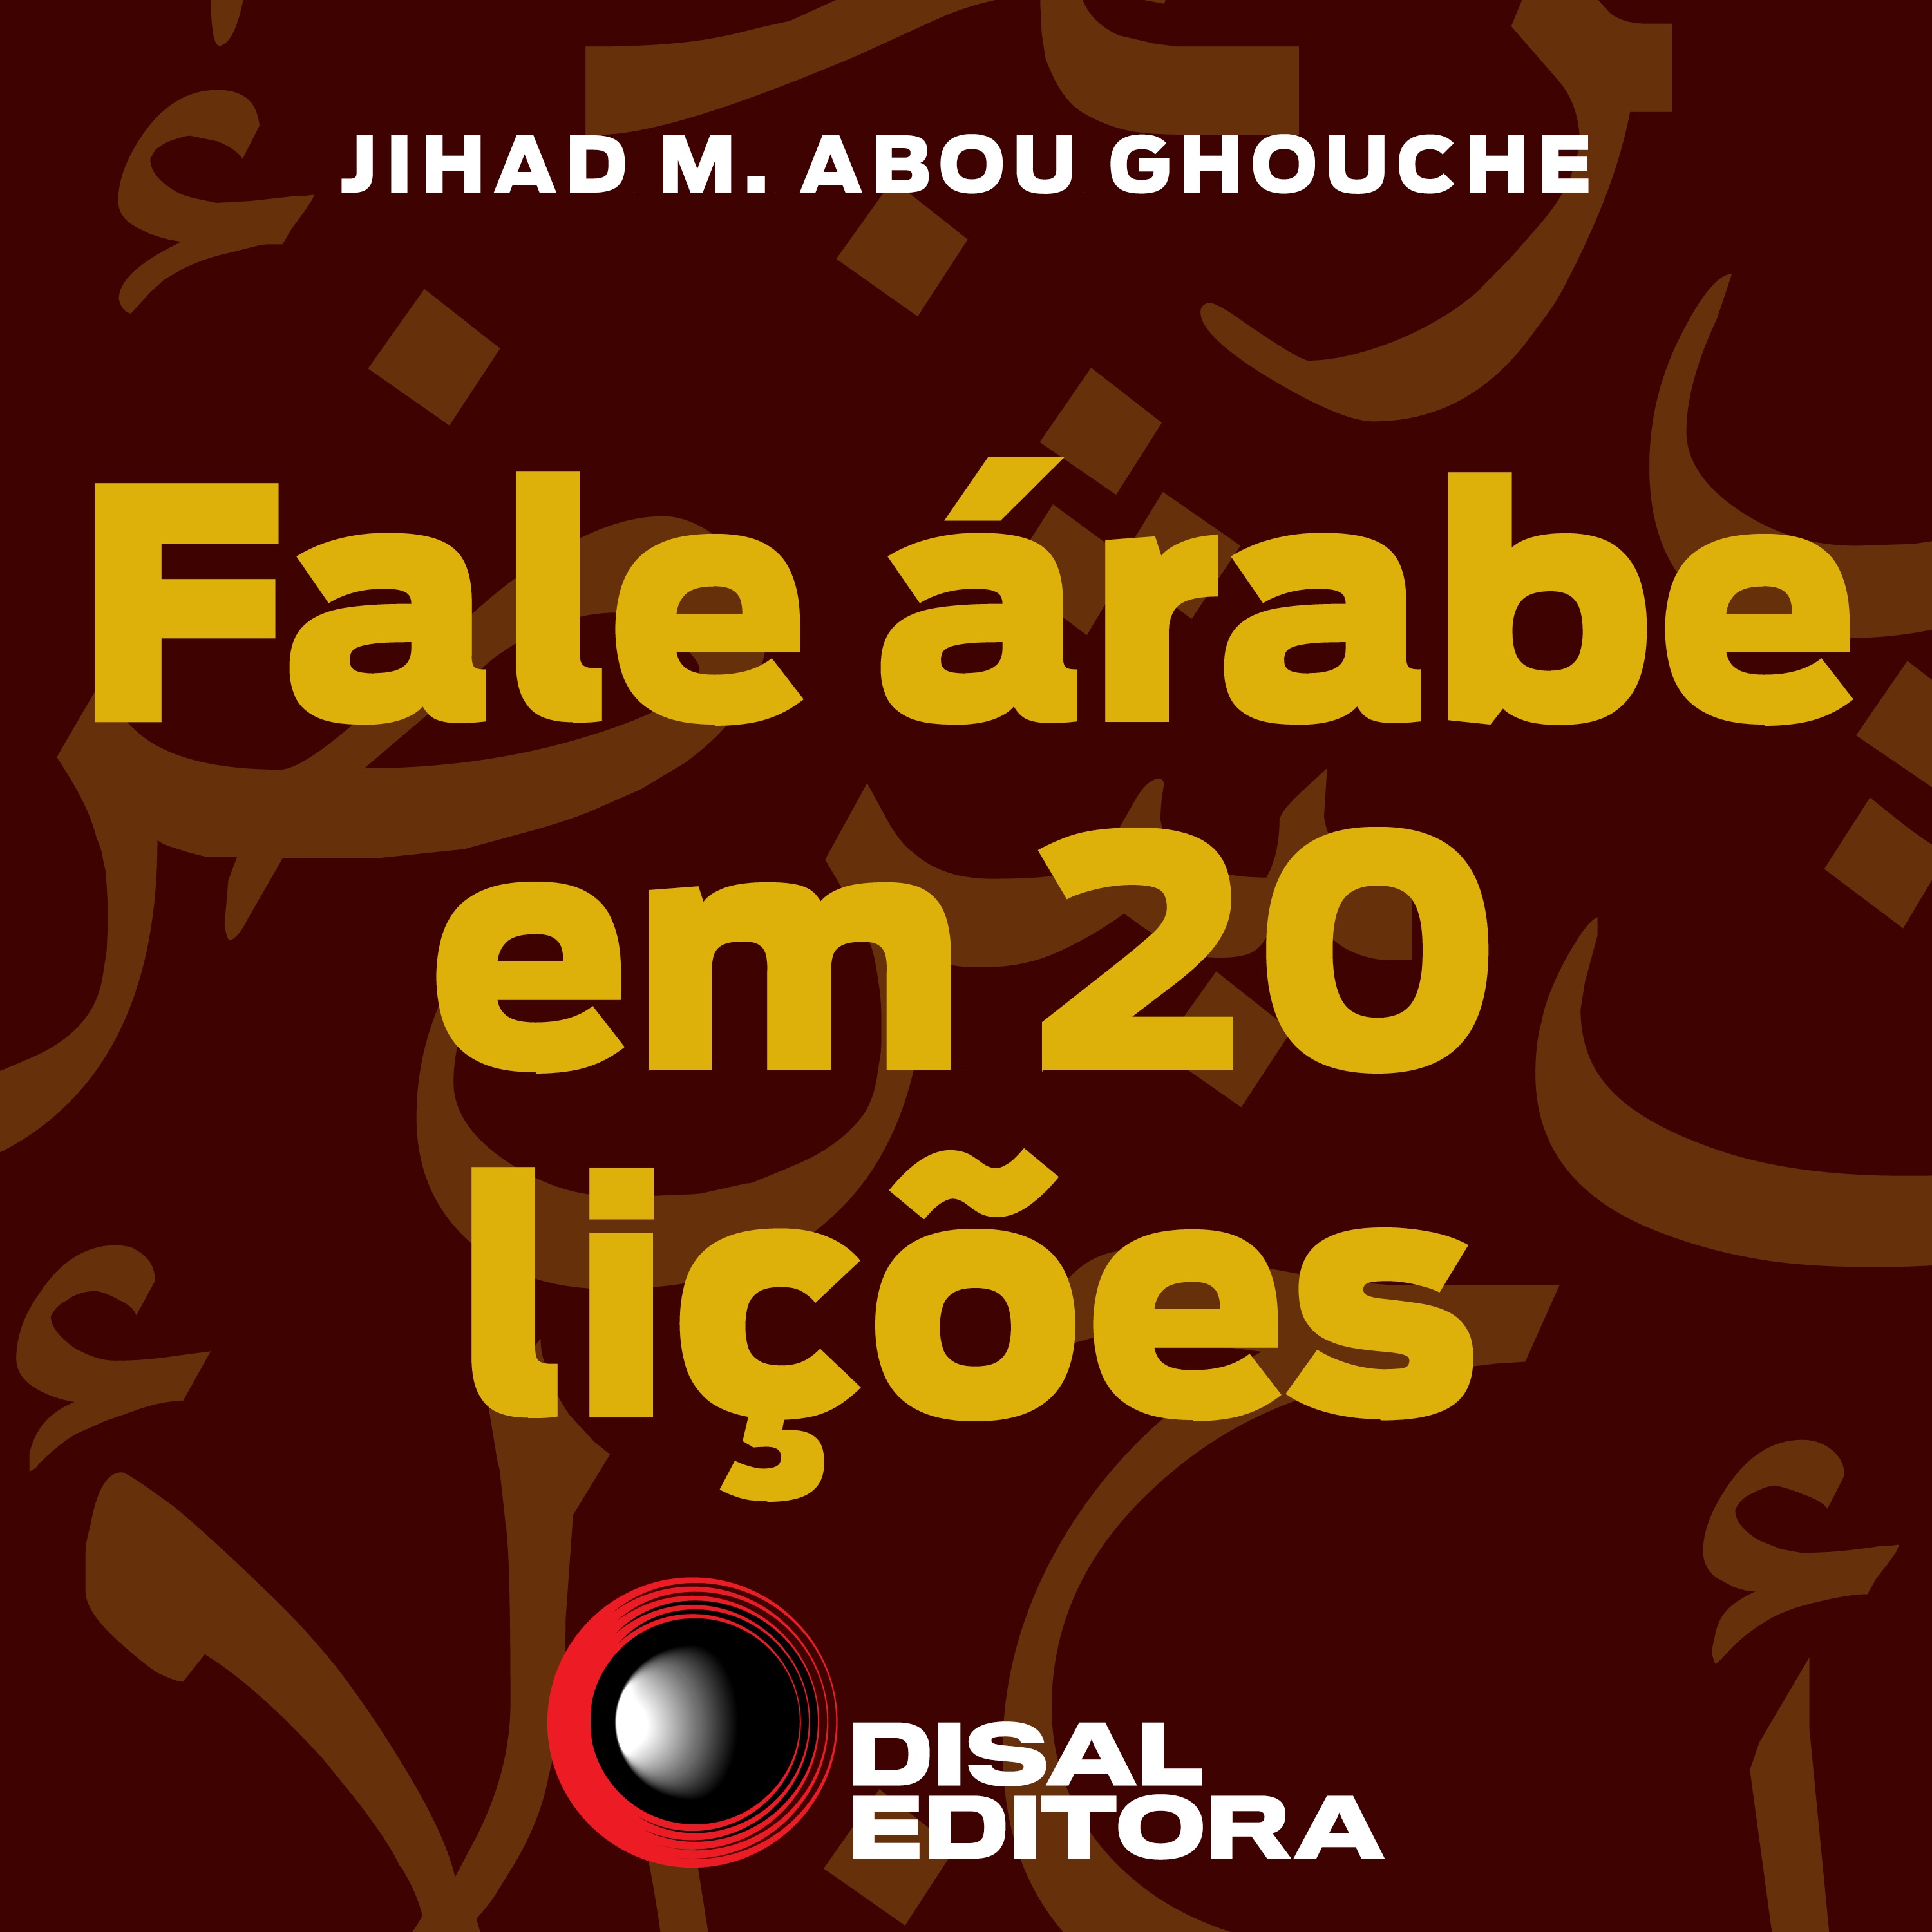 Fale árabe em 20 lições